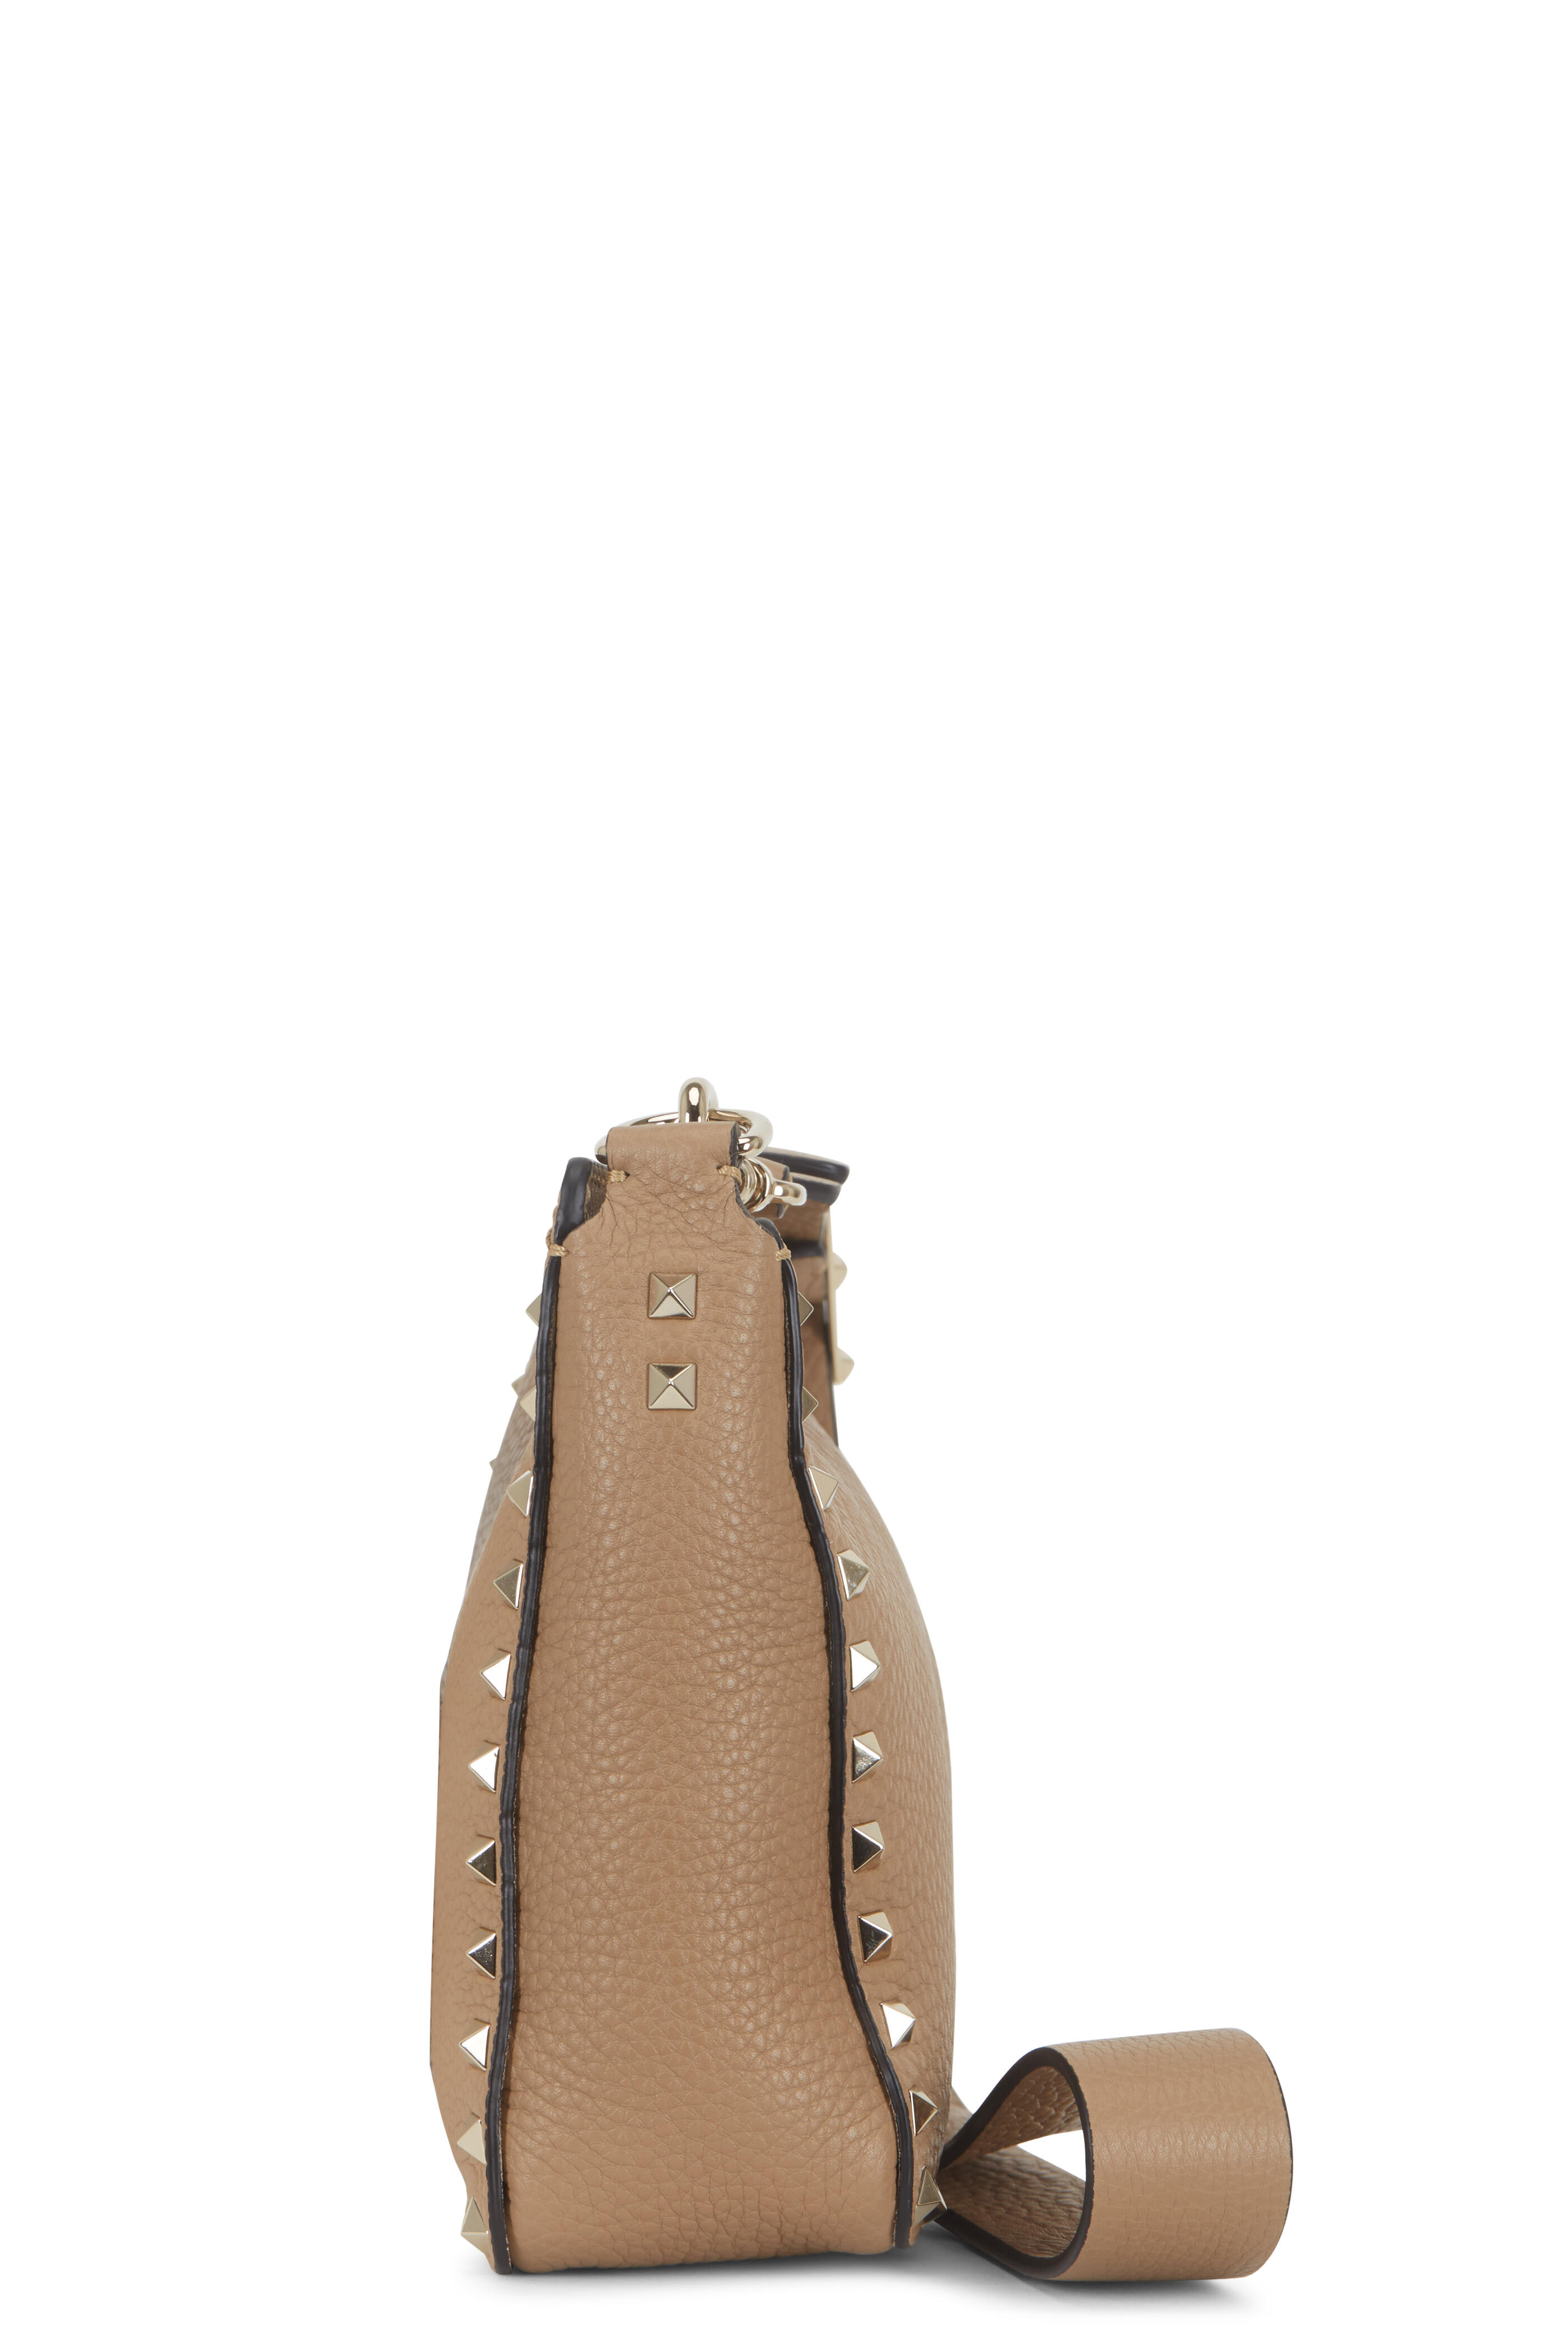 Valentino Garavani Micro Rockstud Tote Crossbody Bag In Cream for